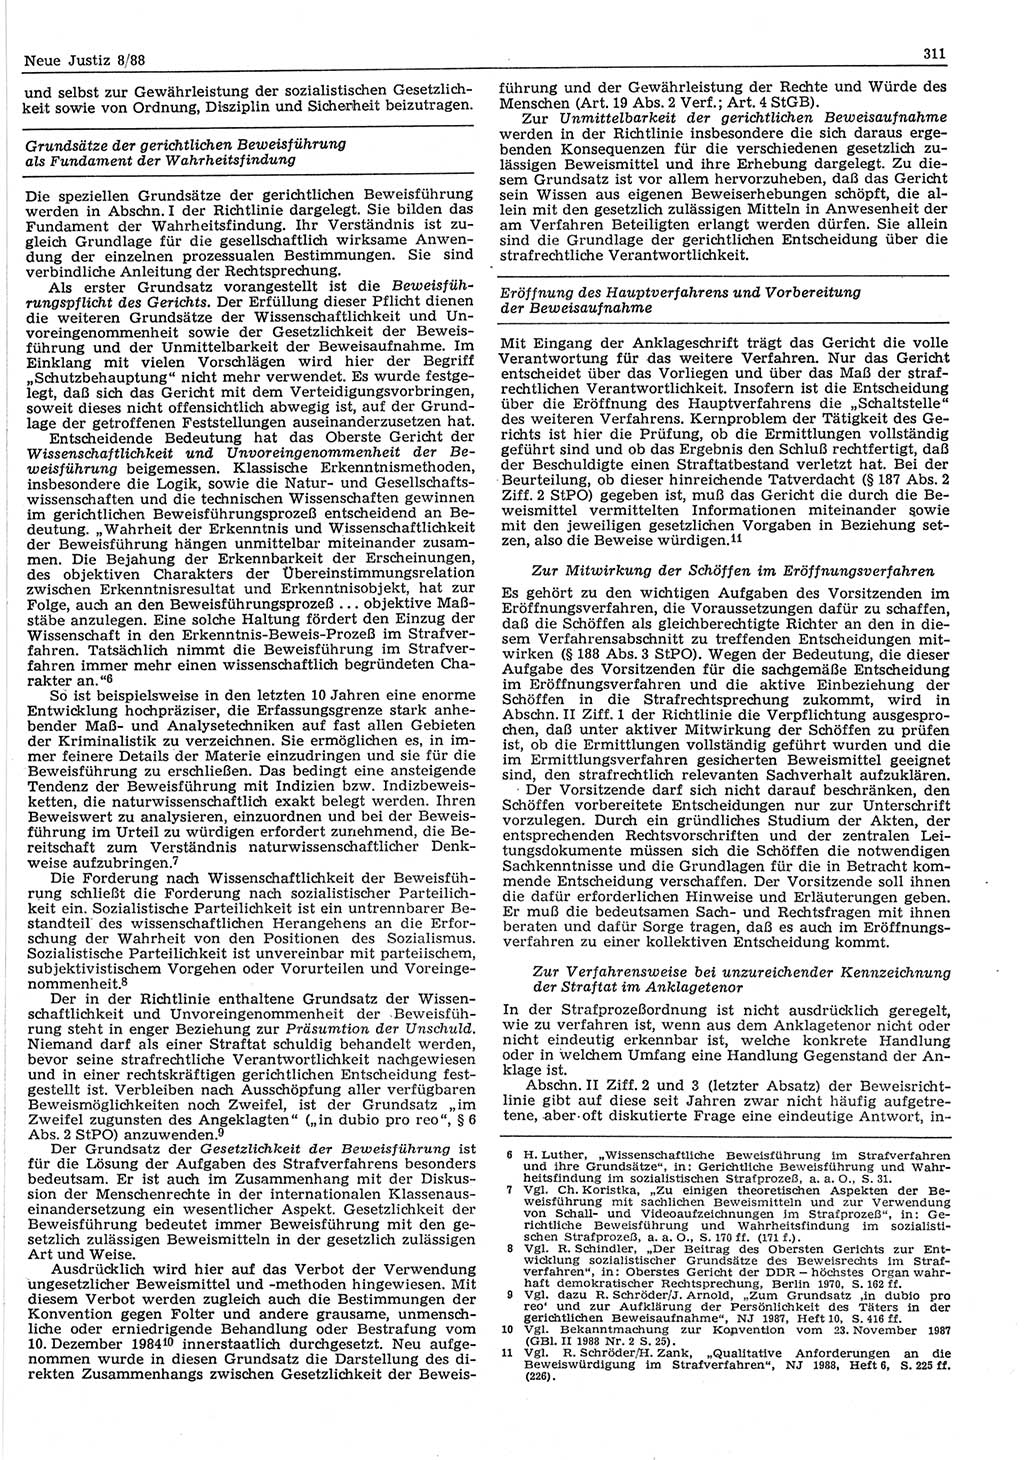 Neue Justiz (NJ), Zeitschrift für sozialistisches Recht und Gesetzlichkeit [Deutsche Demokratische Republik (DDR)], 42. Jahrgang 1988, Seite 311 (NJ DDR 1988, S. 311)